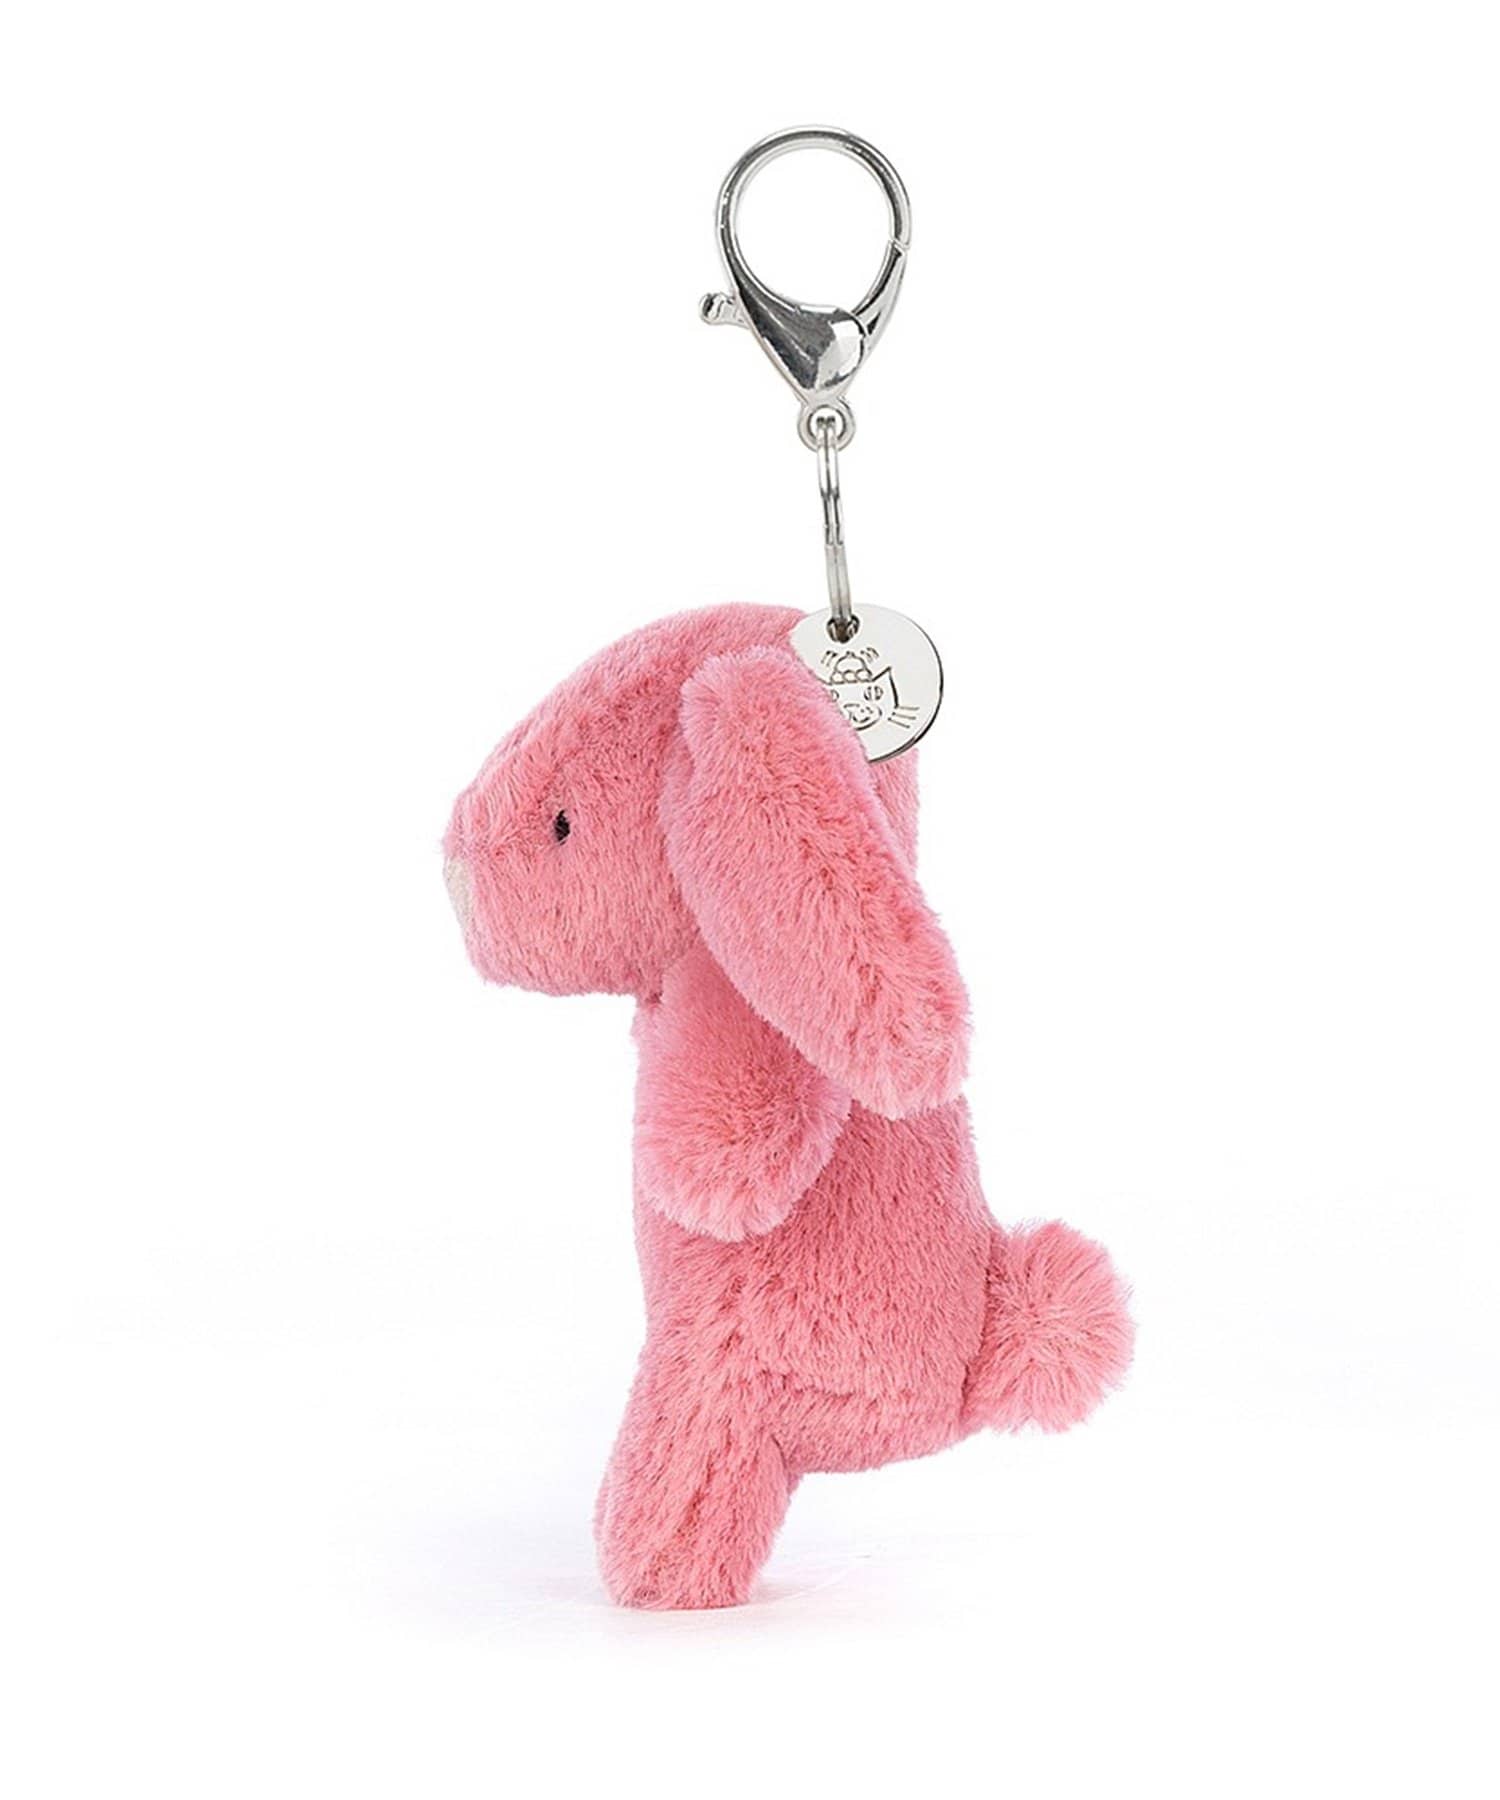 BIRTHDAY BAR(バースデイバー) 【JELLY CAT】Bashful Bunny Pink Bag Charm